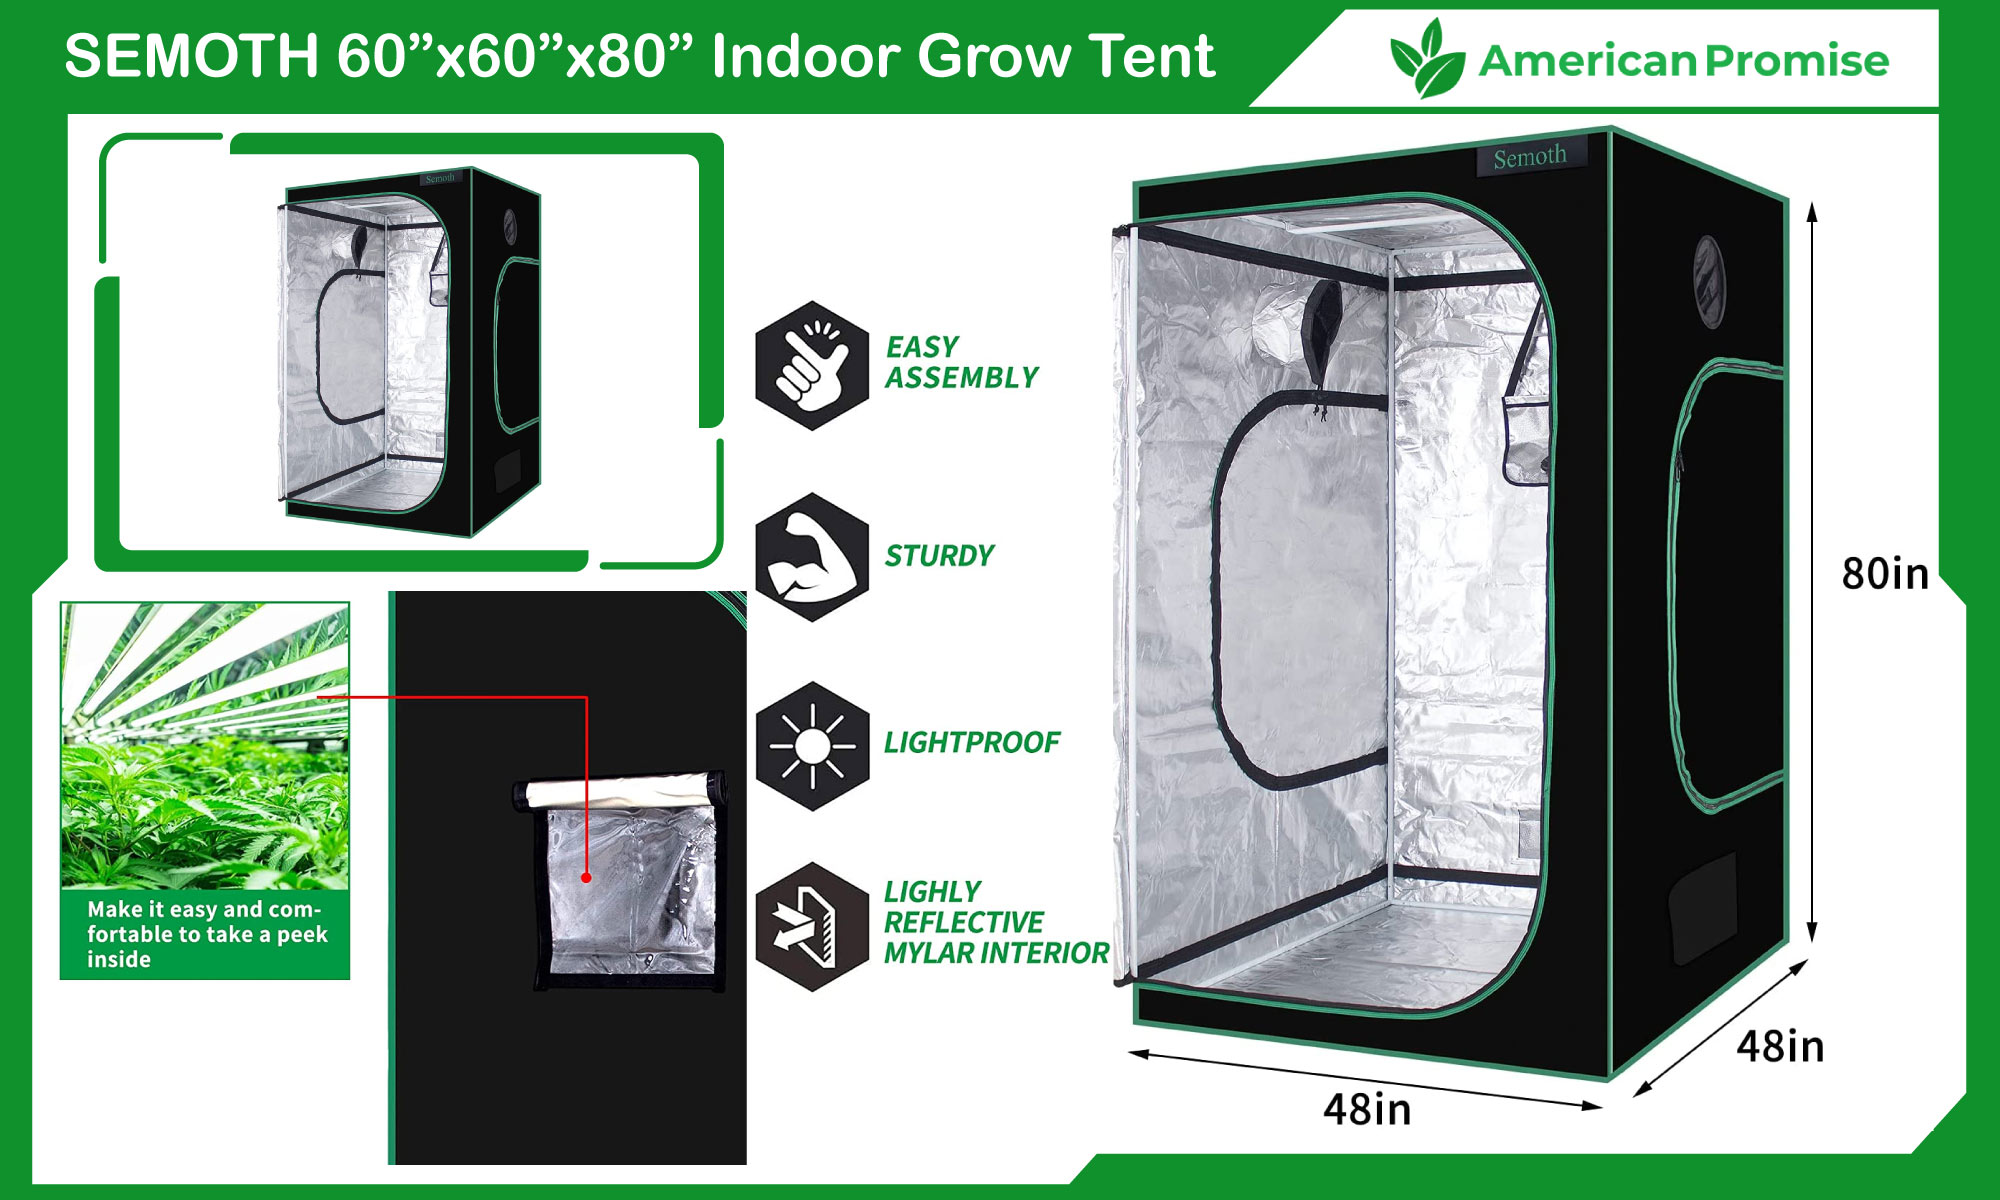 SEMOTH 60”x60”x80” Indoor Grow Tent